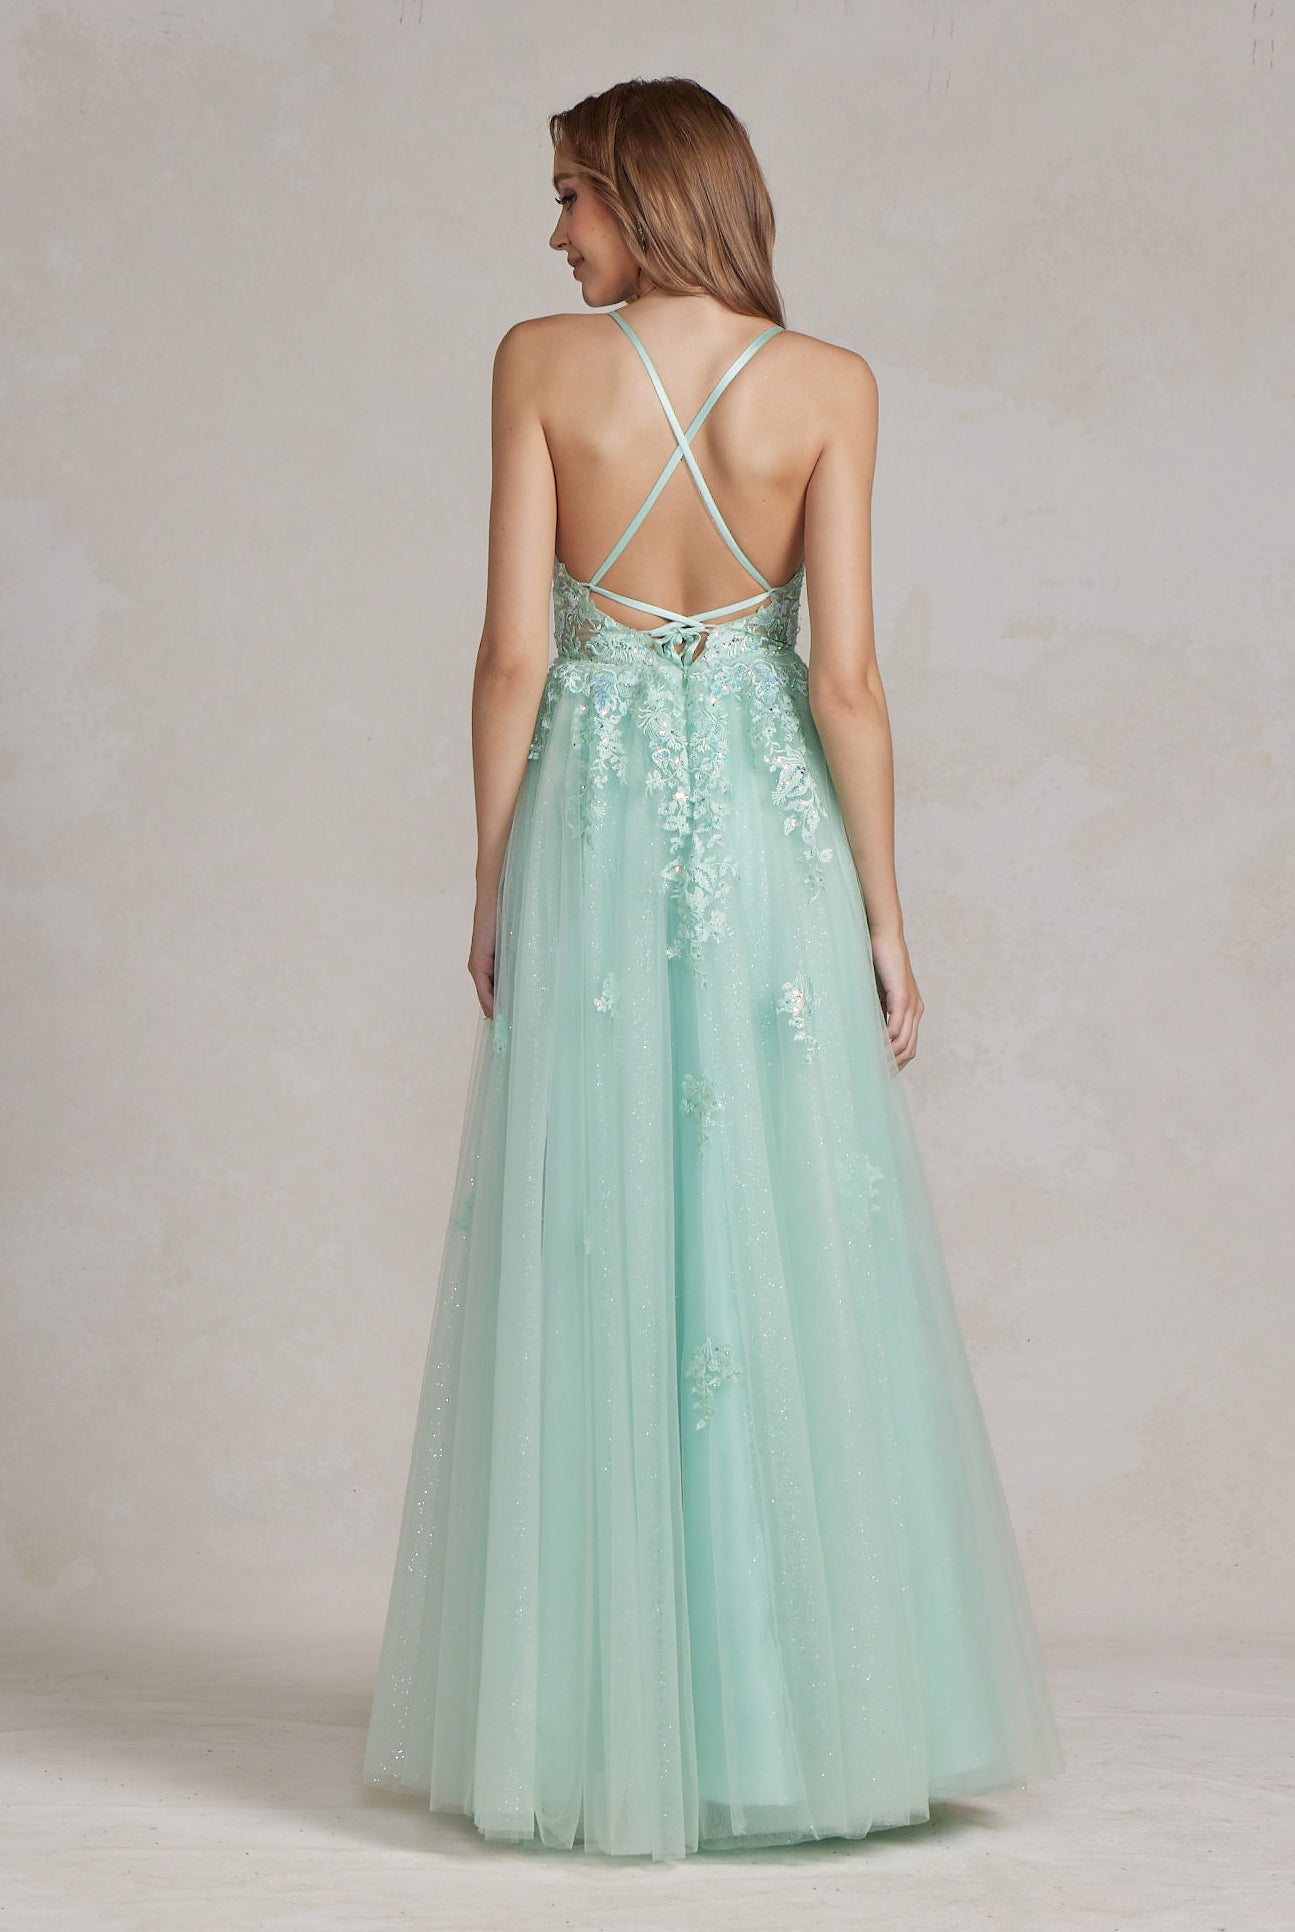 Embellished Applique V-Neck Side Slit Tulle Skirt Long Prom Dress NXT1081-All Dresses, Prom-smcfashion.com